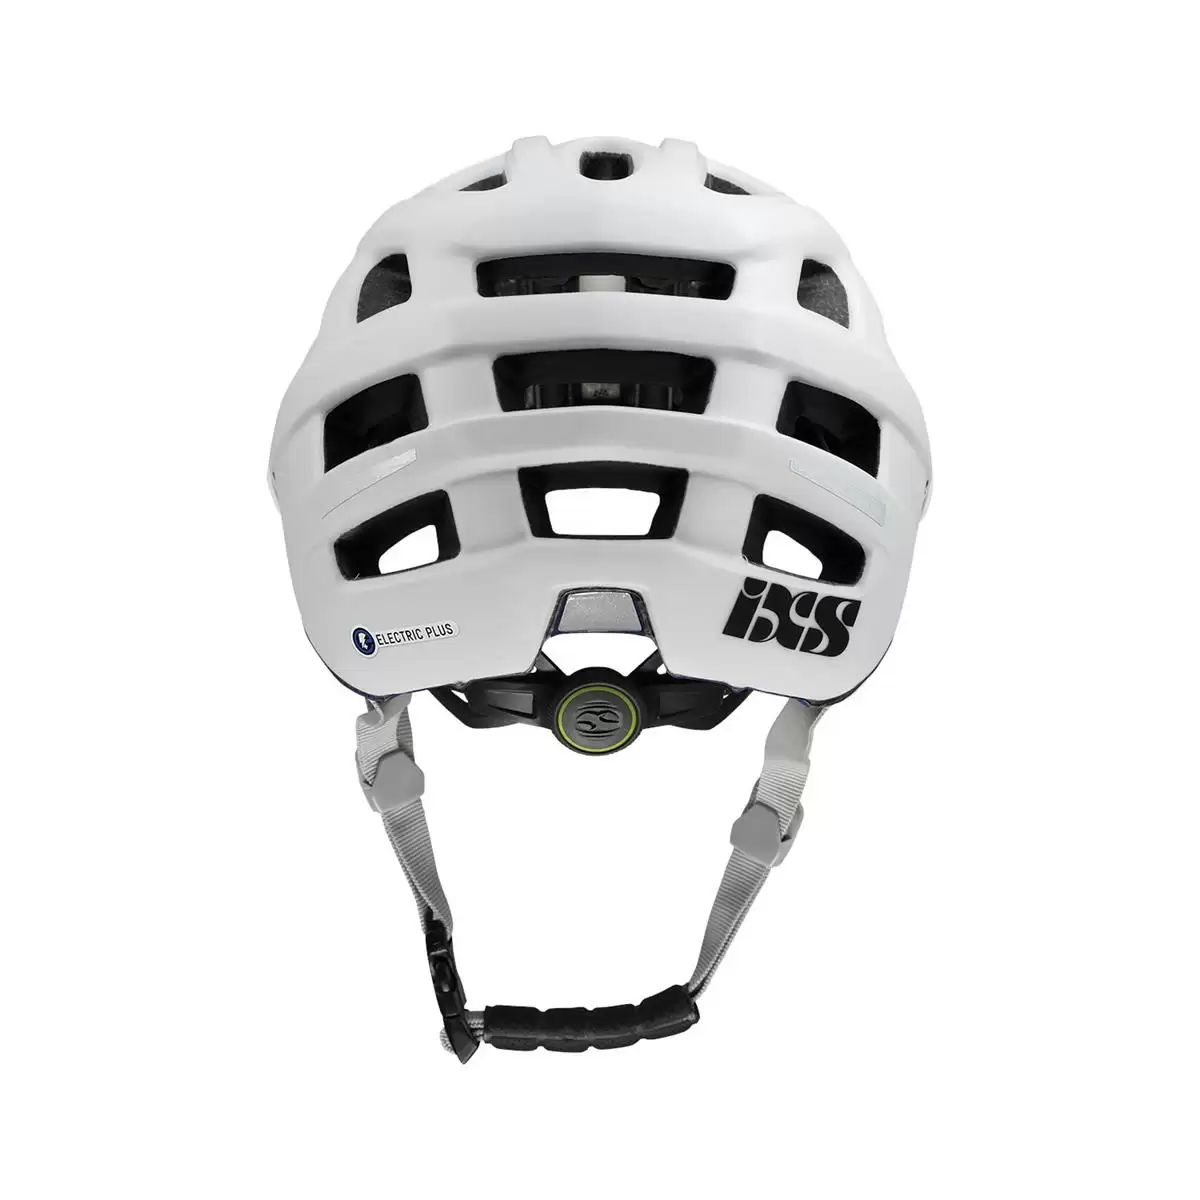 Henduro Helmet Trail Evo E-Bike Edition White Size XS/S (49-54cm) #3